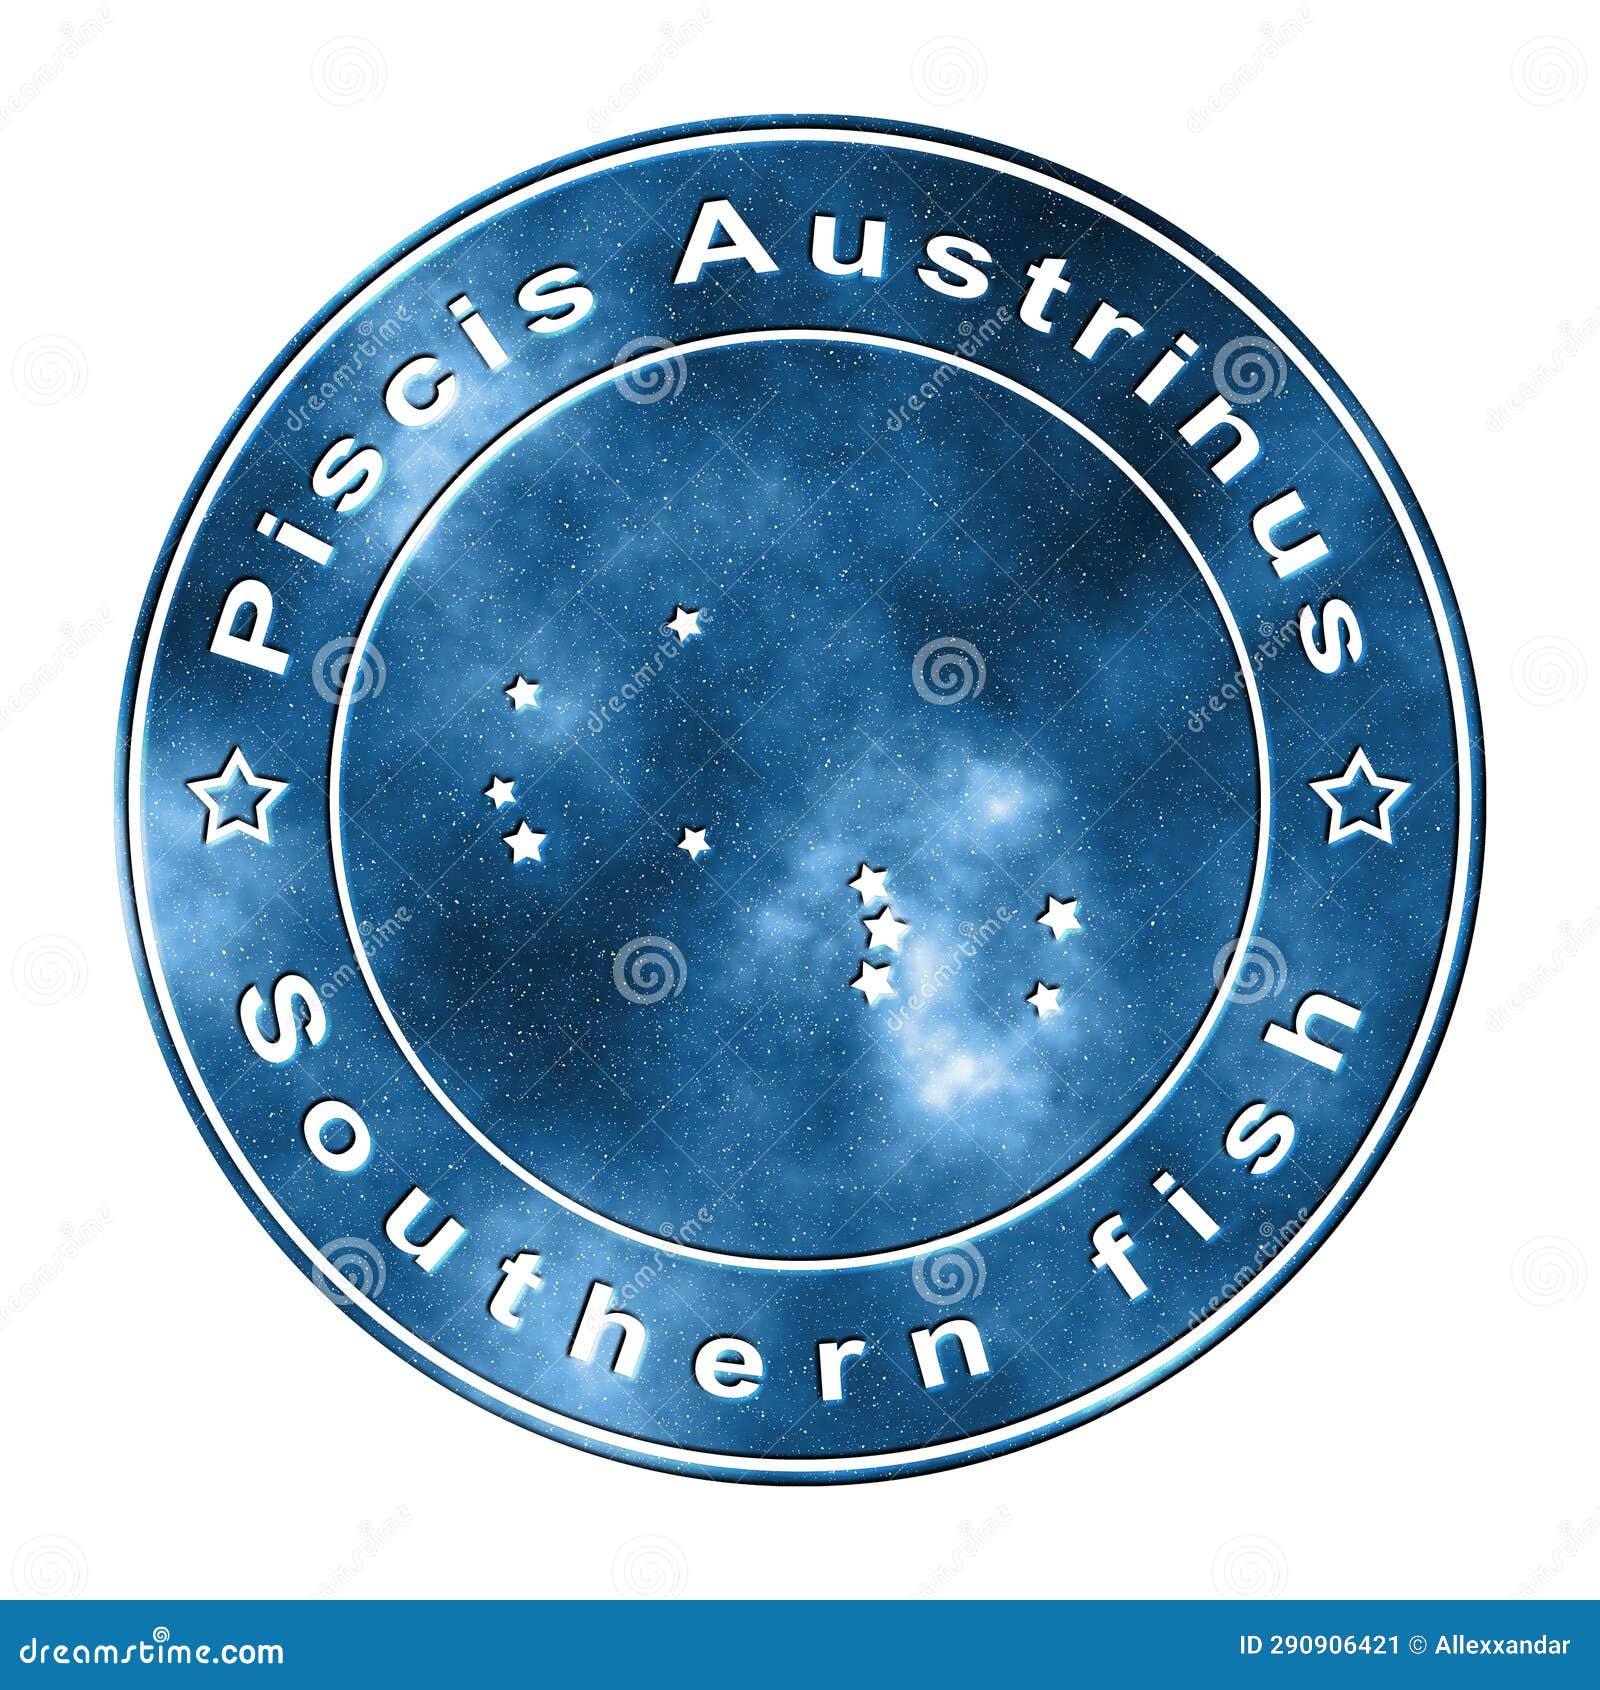 piscis austrinus star constellation, southern fish constellation